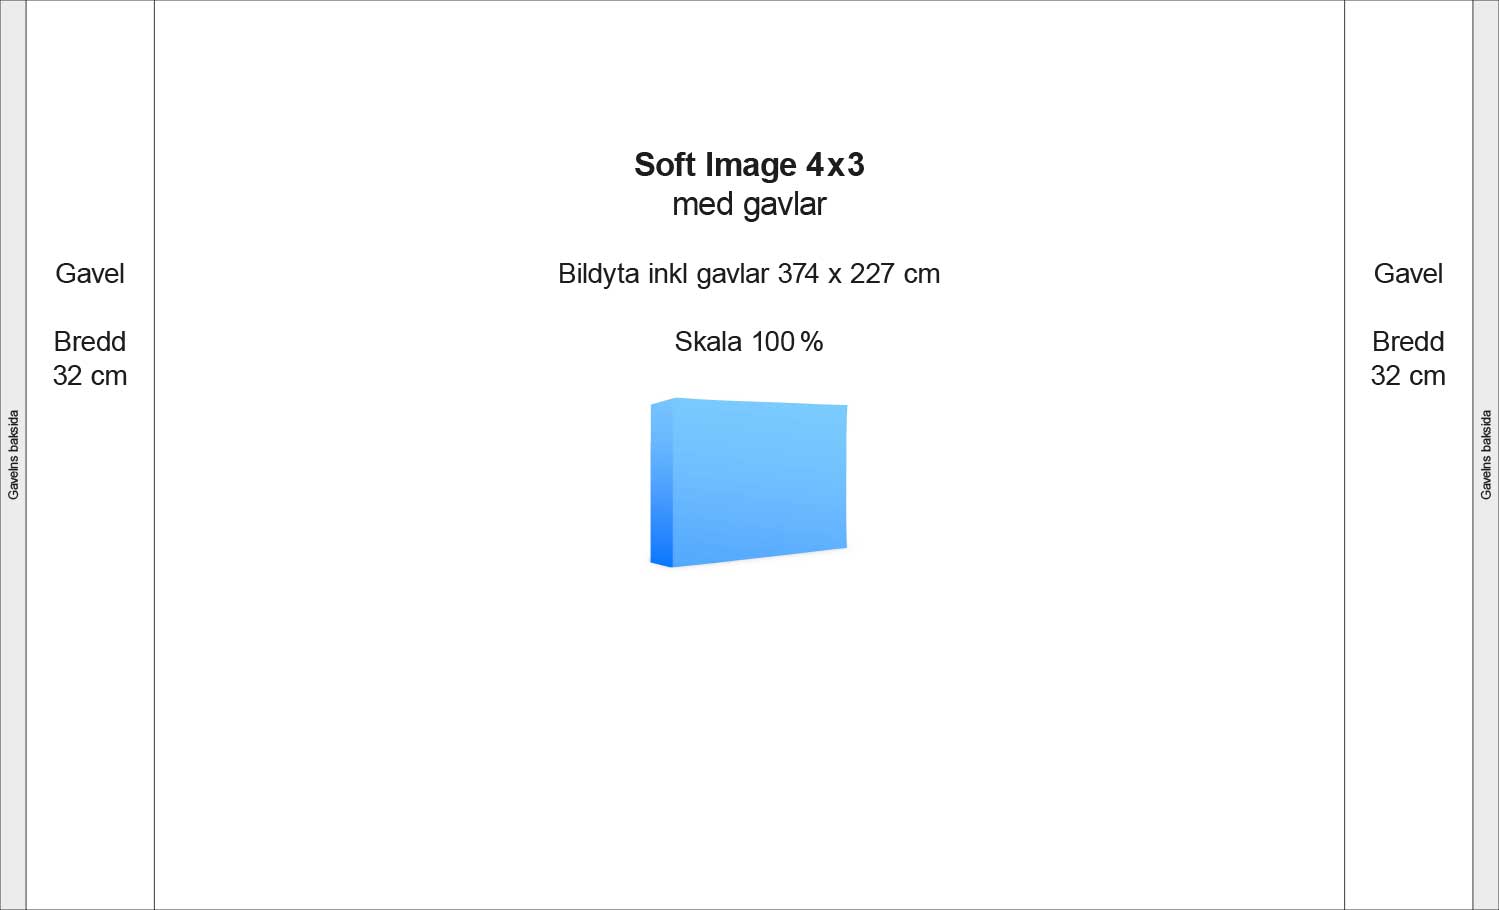 Soft Image 4x3 med gavlar